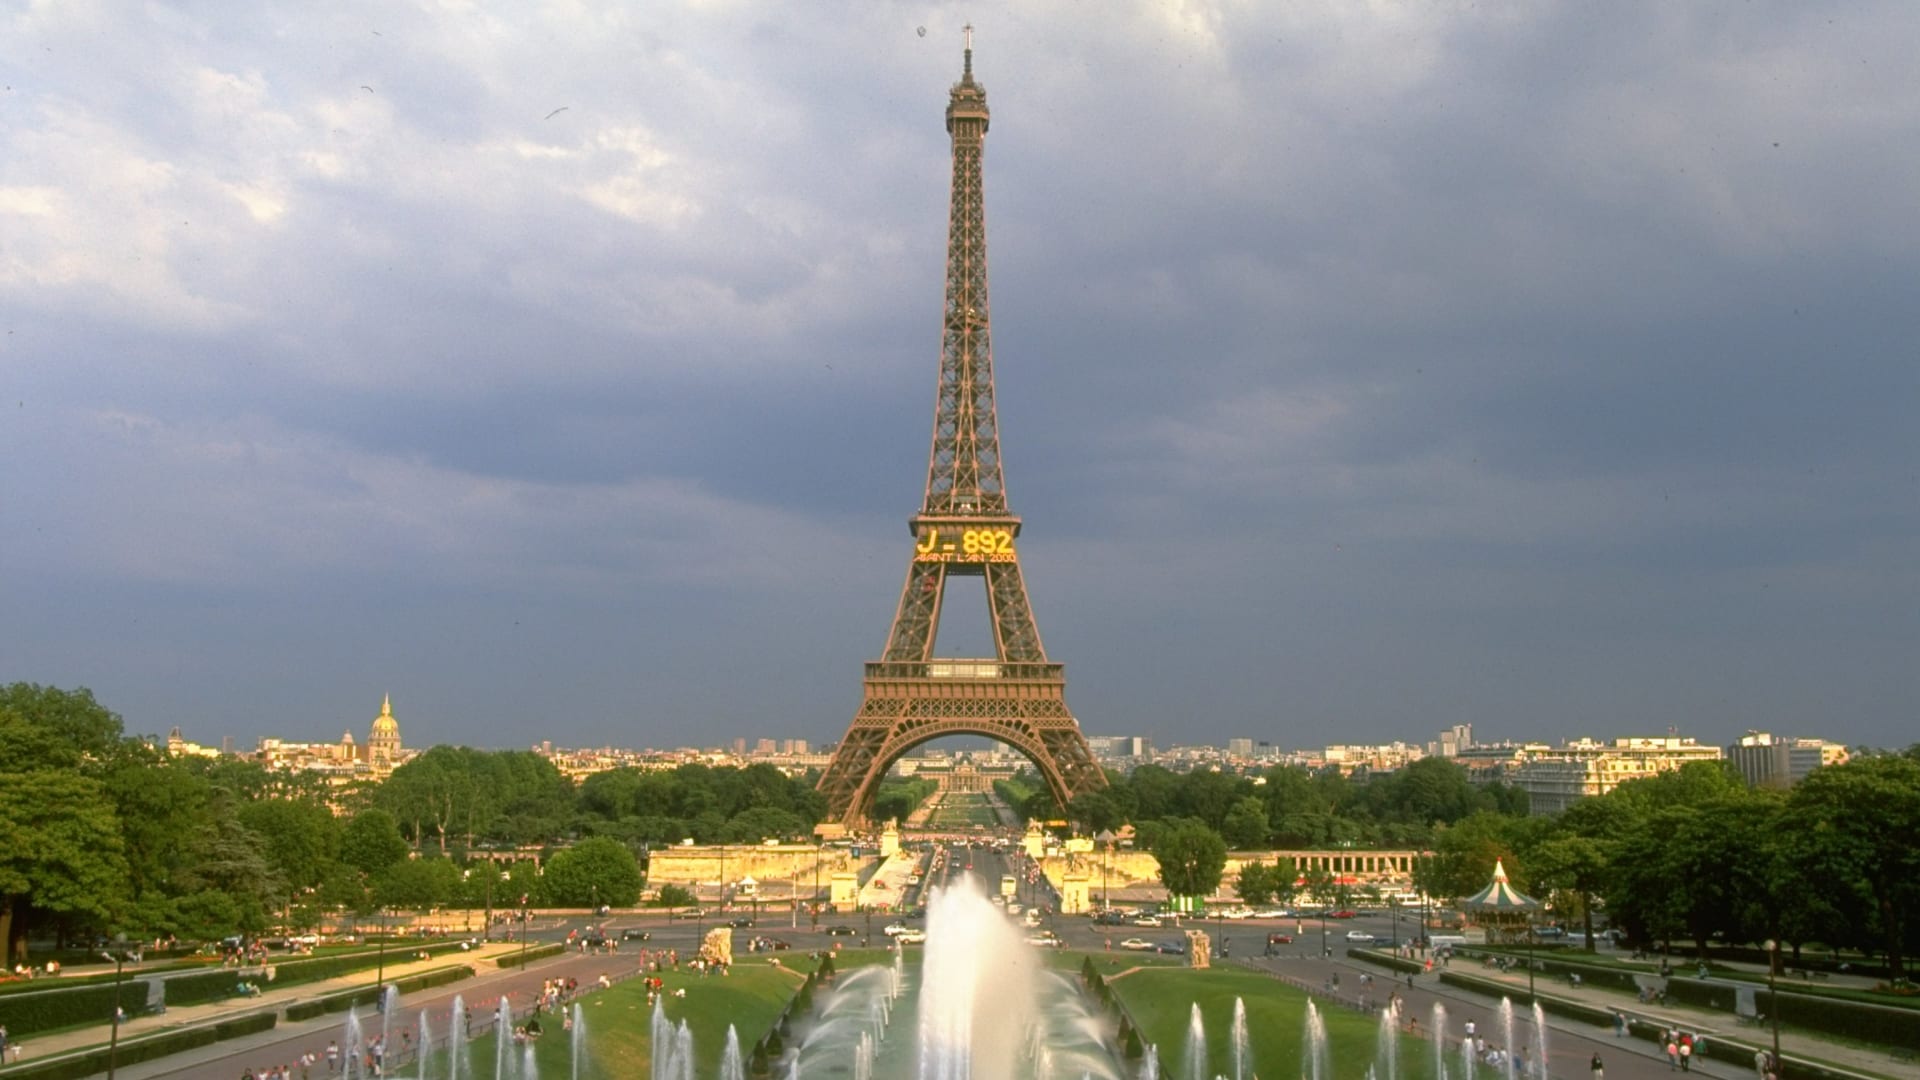 السياحة في باريس بذروة الاحتجاجات.. كيف سيتأثر موسم الصيف في فرنسا؟